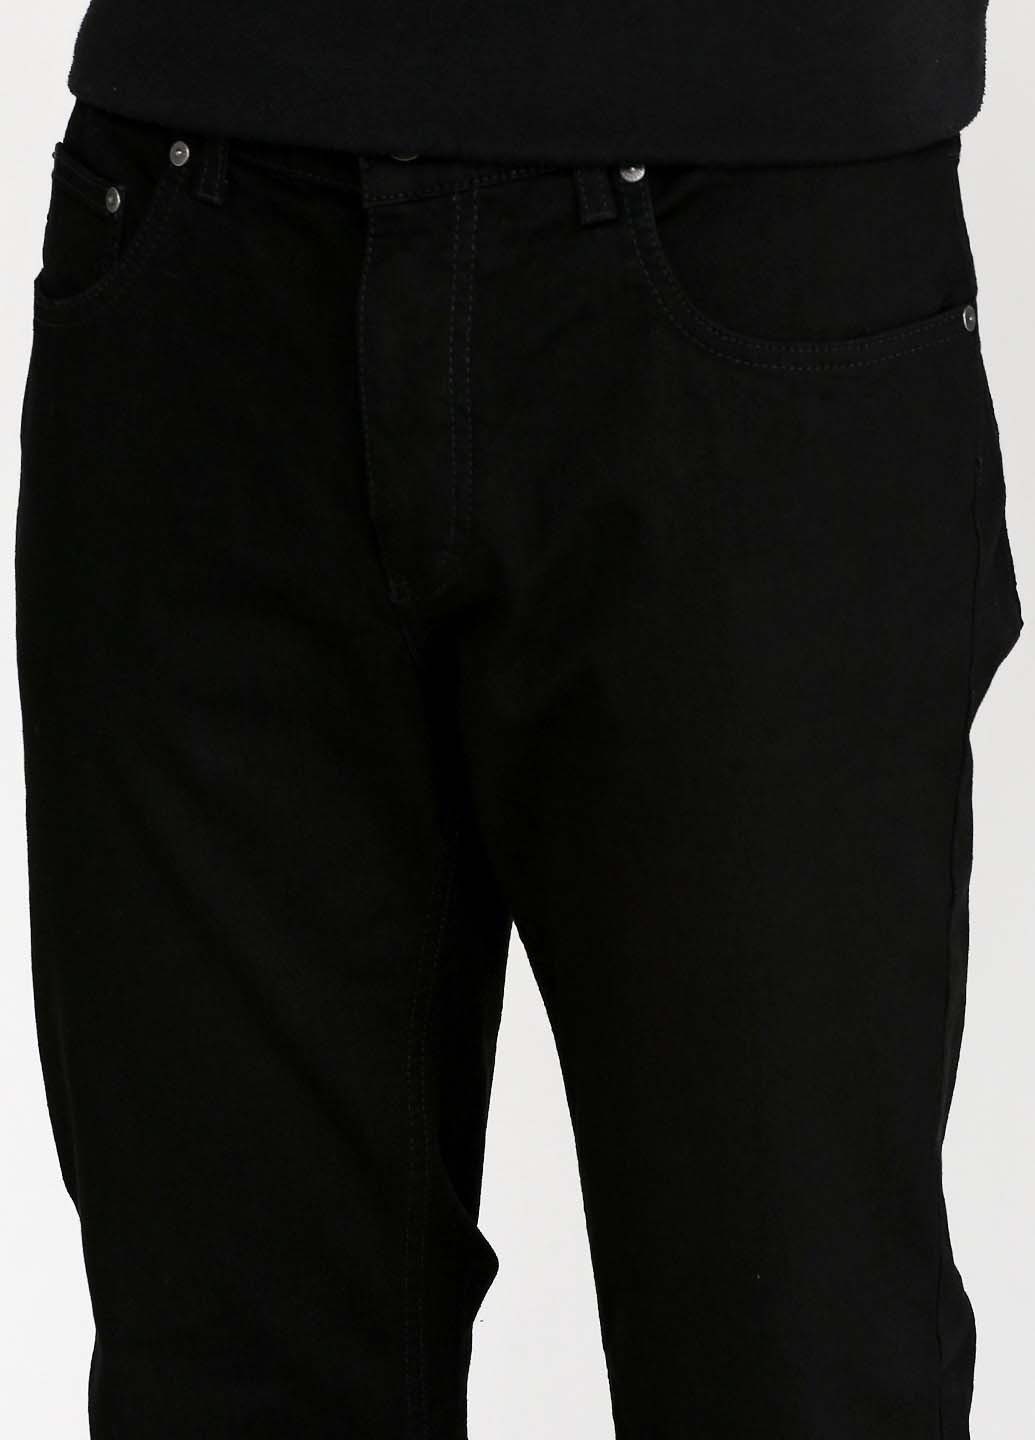 Черные регюлар фит джинсы P-4-043 Pioneer